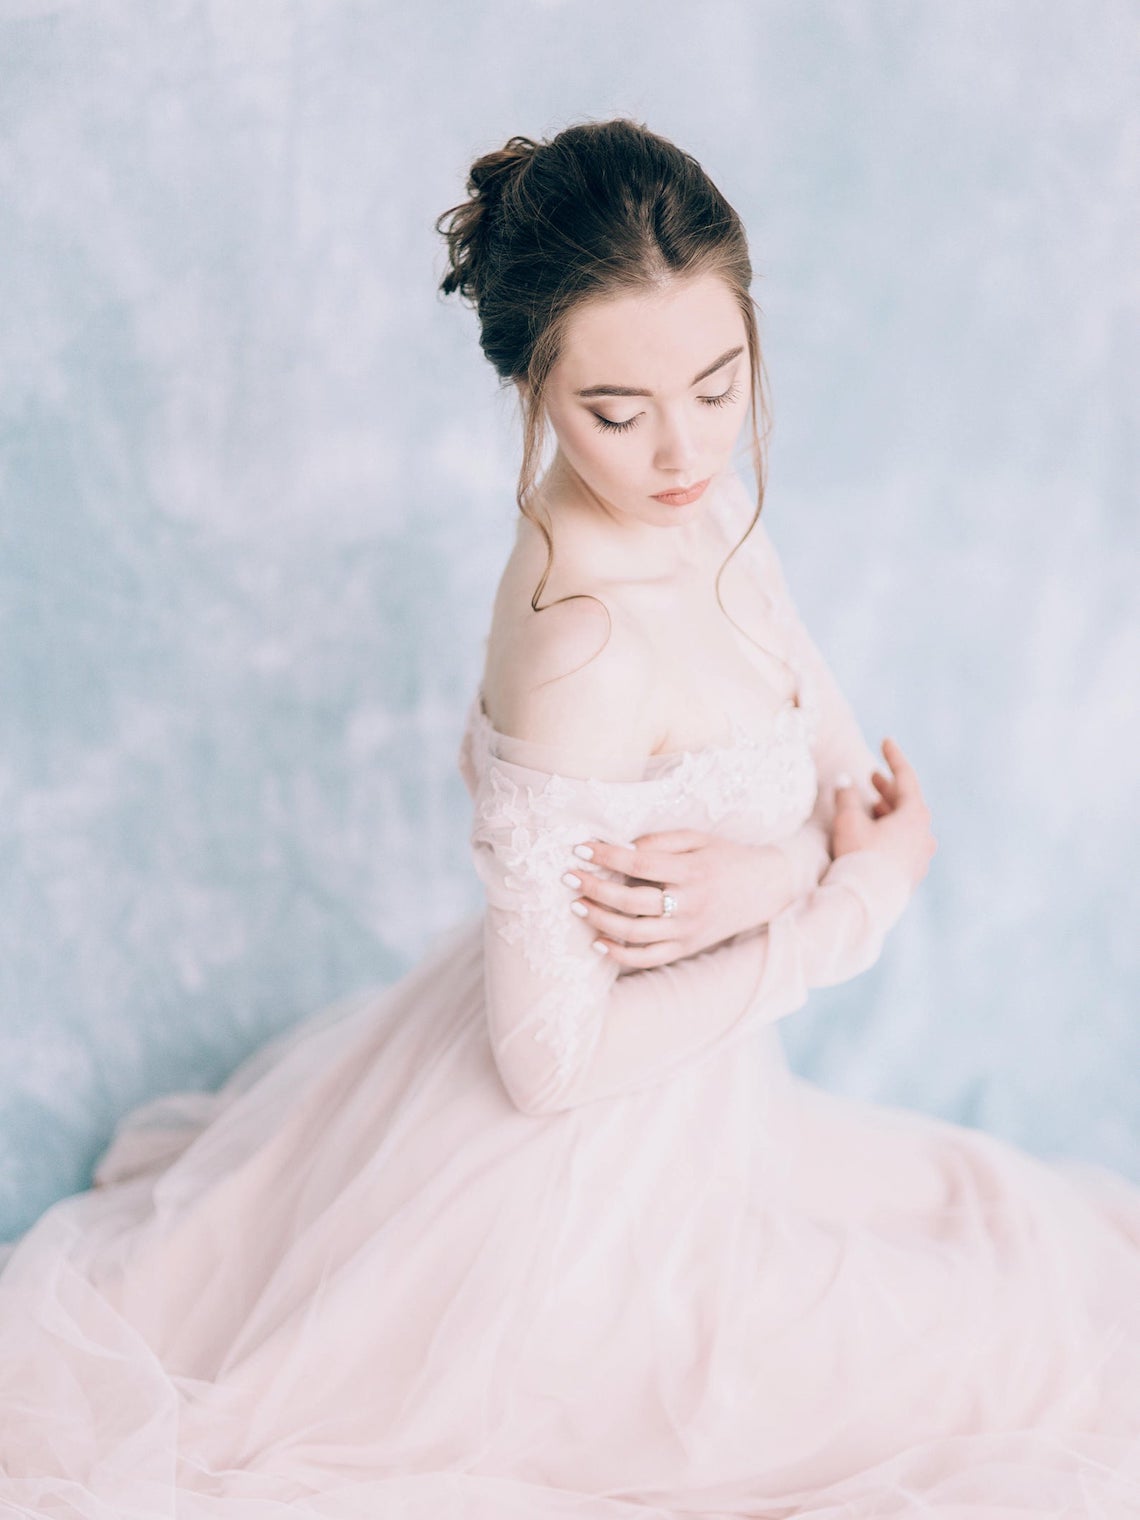 Iotova Inna Dresses Pink Tulle Wedding Dress Best Pink Wedding Dresses for 2021 2022 Brides Bridal Musings - 30 chiếc áo dài cưới màu hồng dành cho cô dâu yêu thích sắc màu